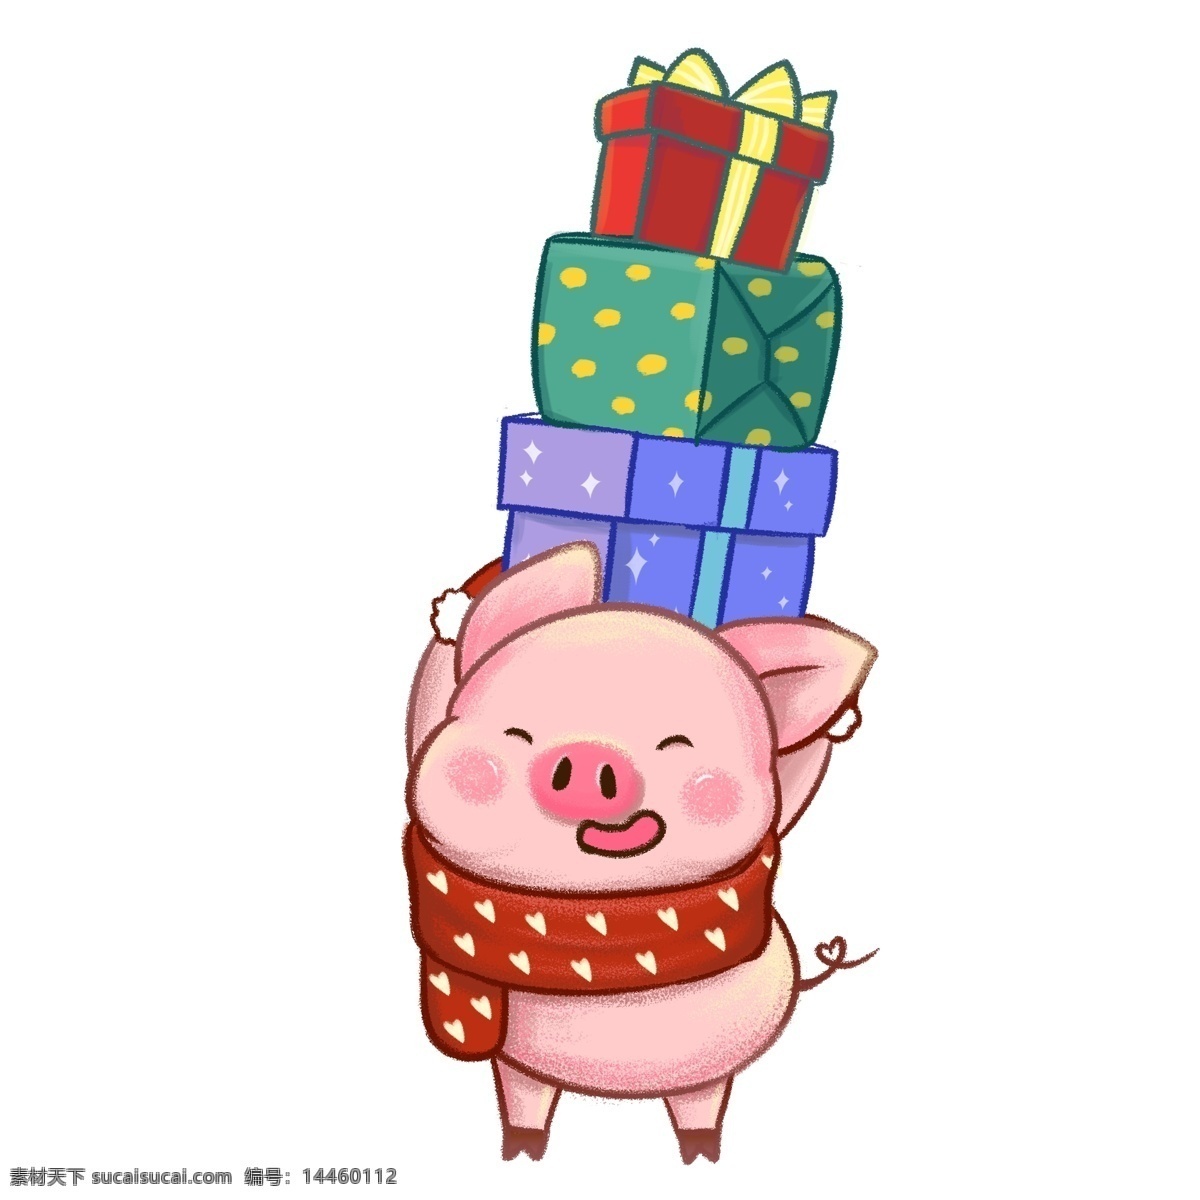 新年 快乐 送礼 物 粉红 猪 新年快乐 礼物 小猪 春节 礼物盒 猪年 2019 送礼物 收礼物 爱心围巾 生肖猪